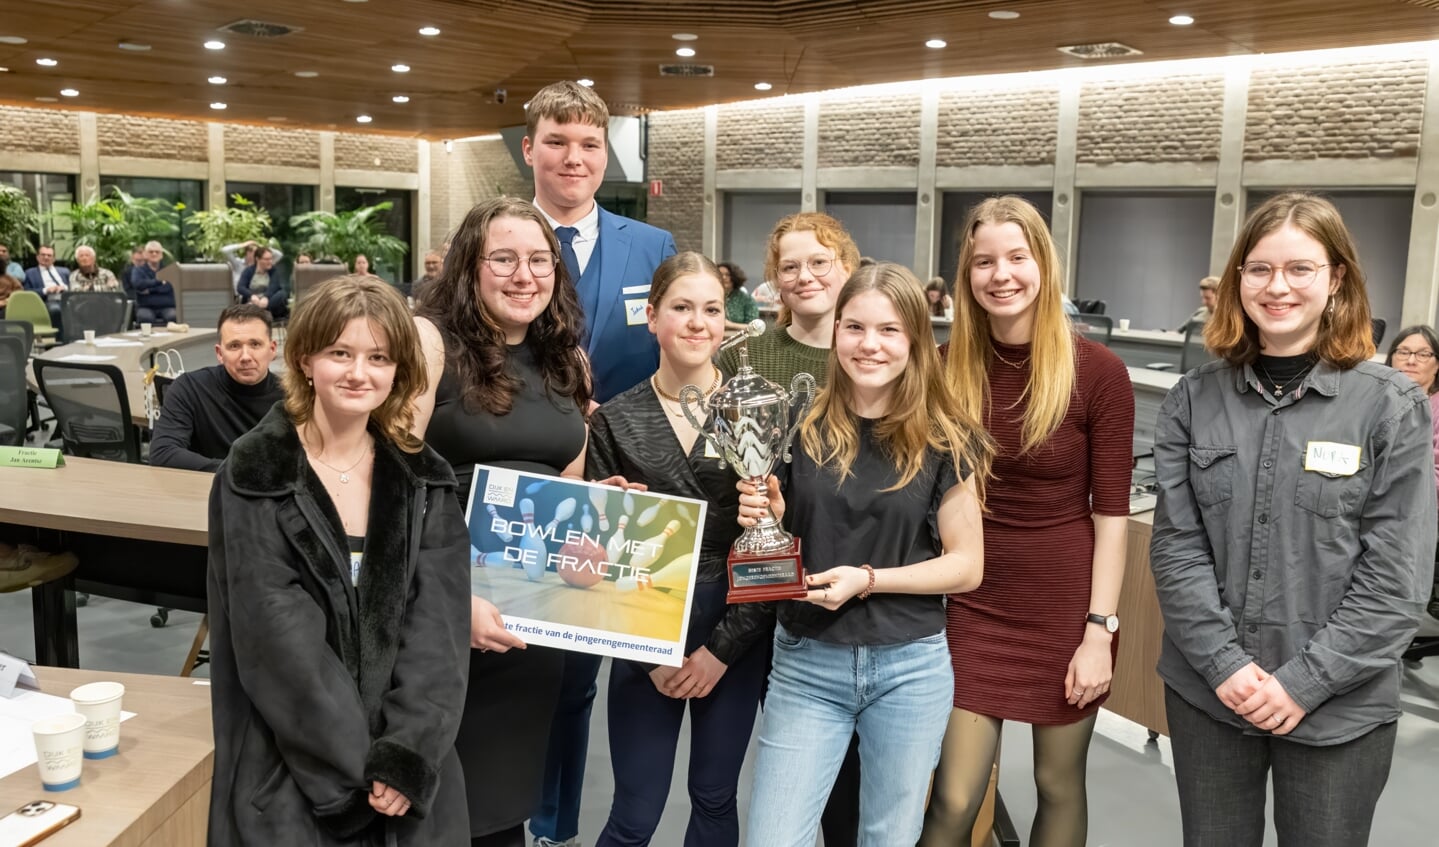 De fractie van het Huygens College won de prijs voor beste fractie.